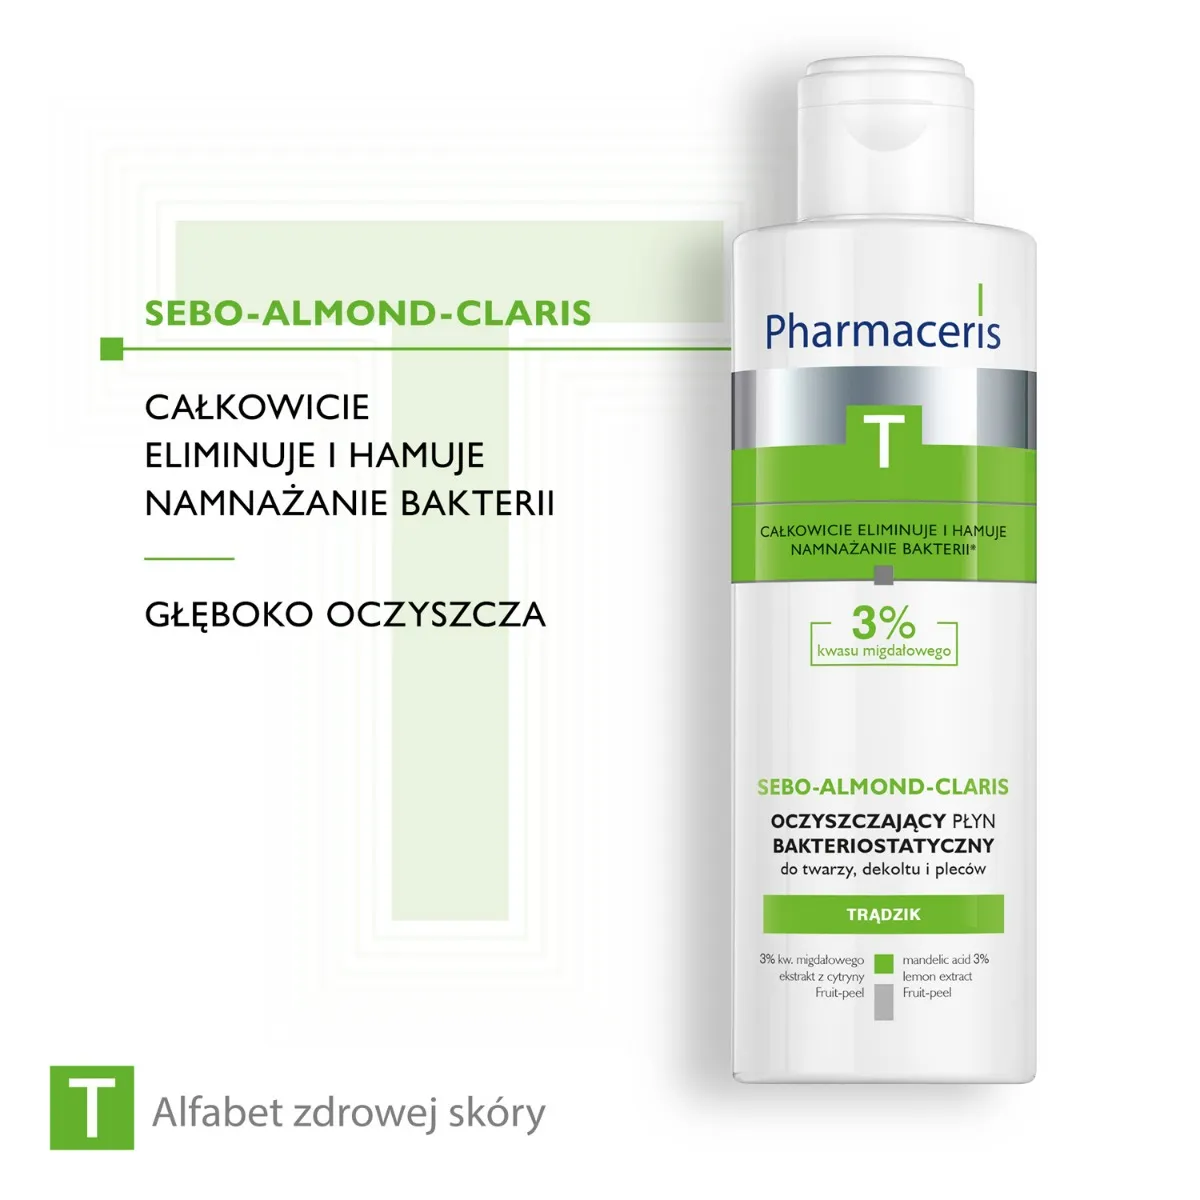 Pharmaceris T Sebo-Almond-Claris, oczyszczający płyn bakteriostatyczny, 190 ml 